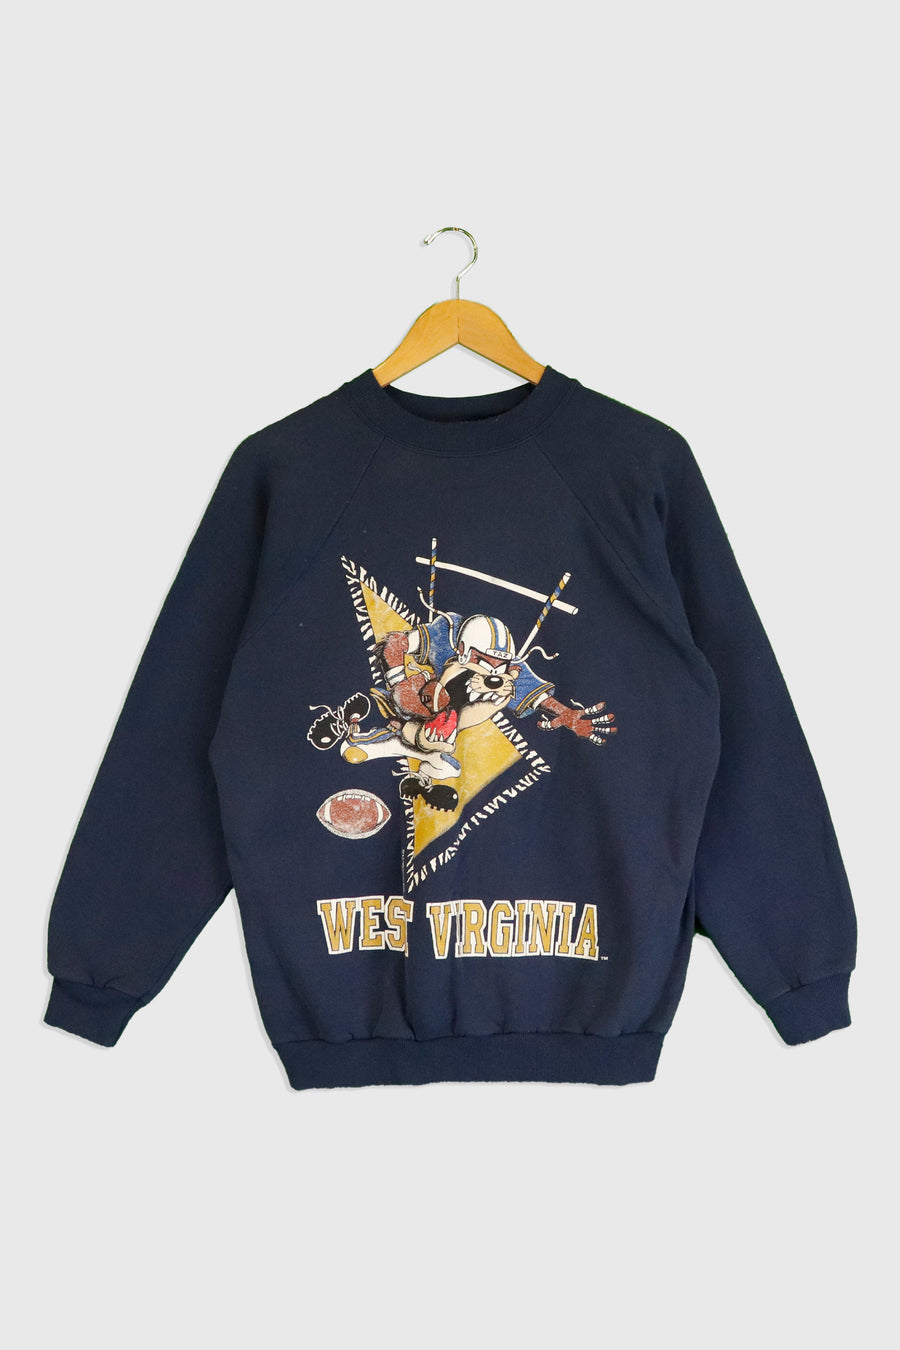 Vintage 1996 West Virginia Taz Football Crewneck Sweatshirt Sz L